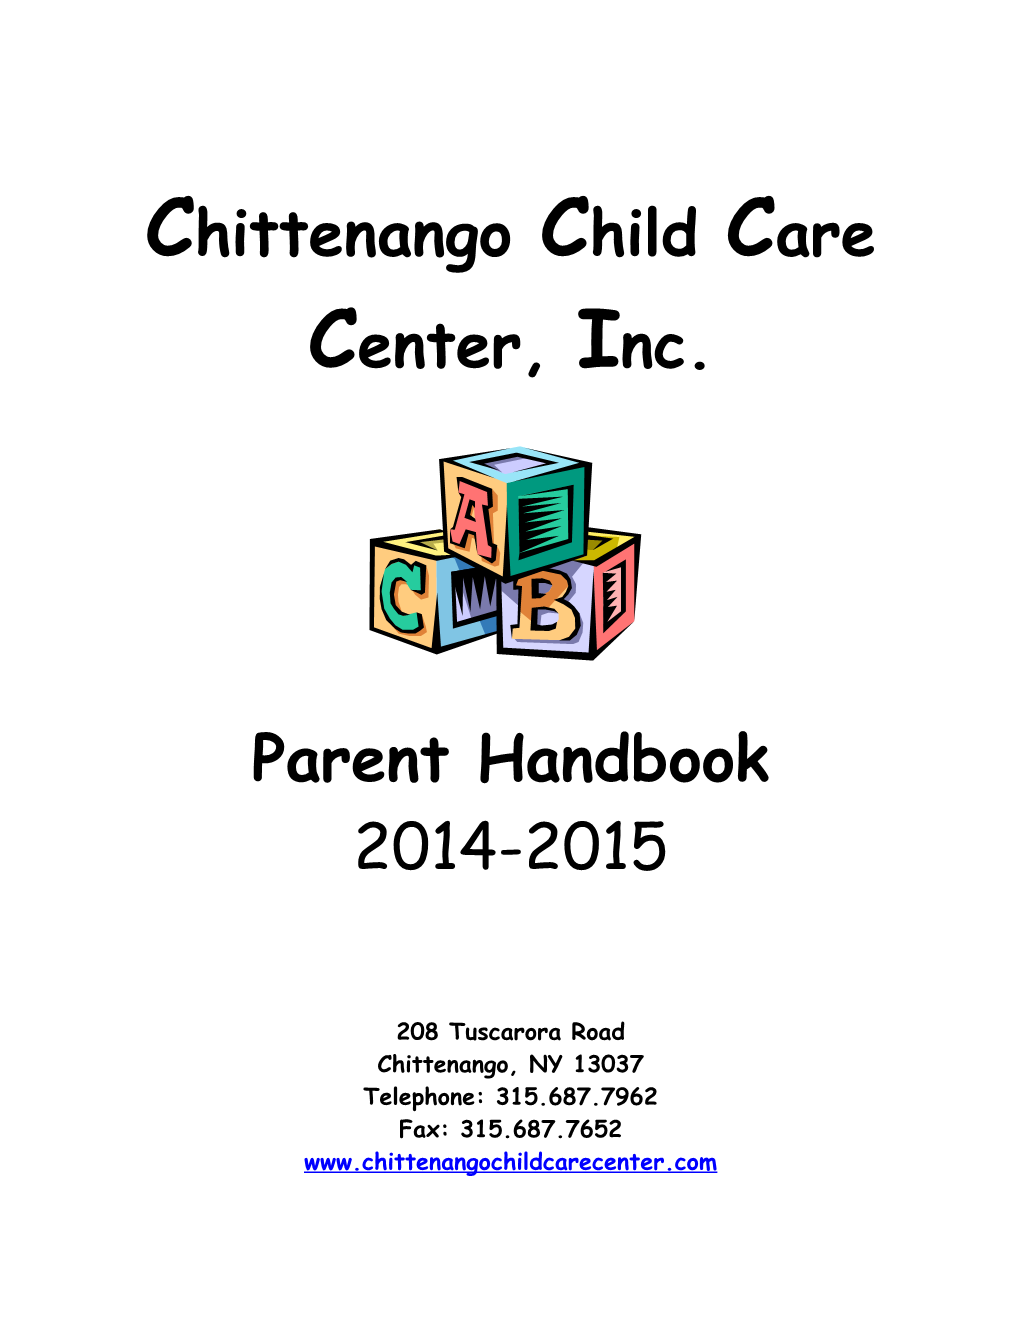 Final Parent Handbook (8/31/12) (M0225211;1)